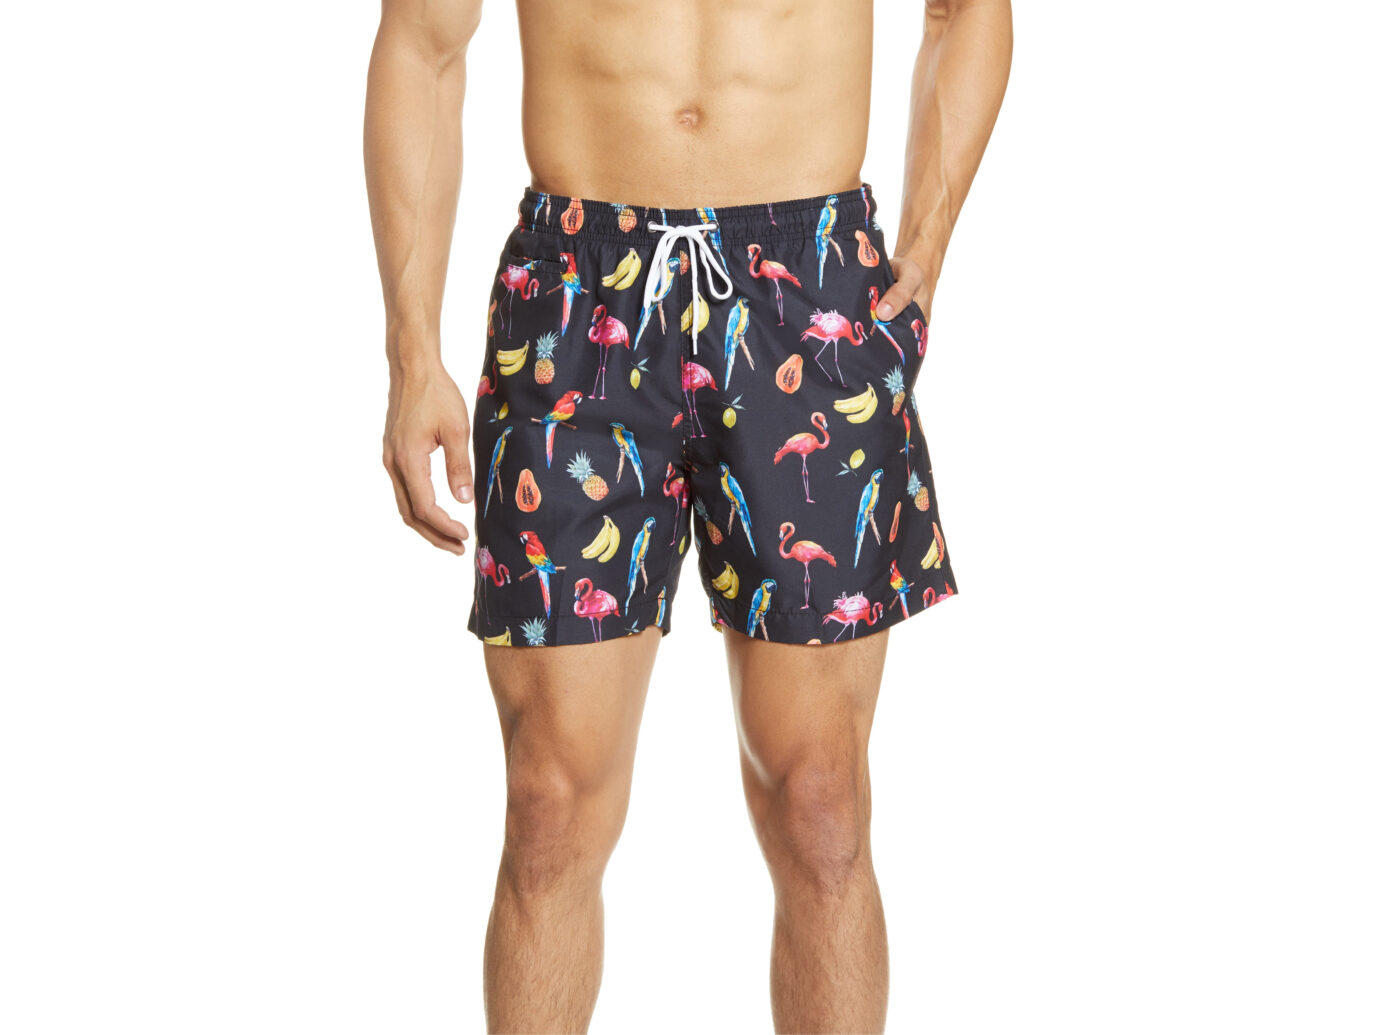 Swim Shorts Men - Swimwear & Swim Trunks for Men